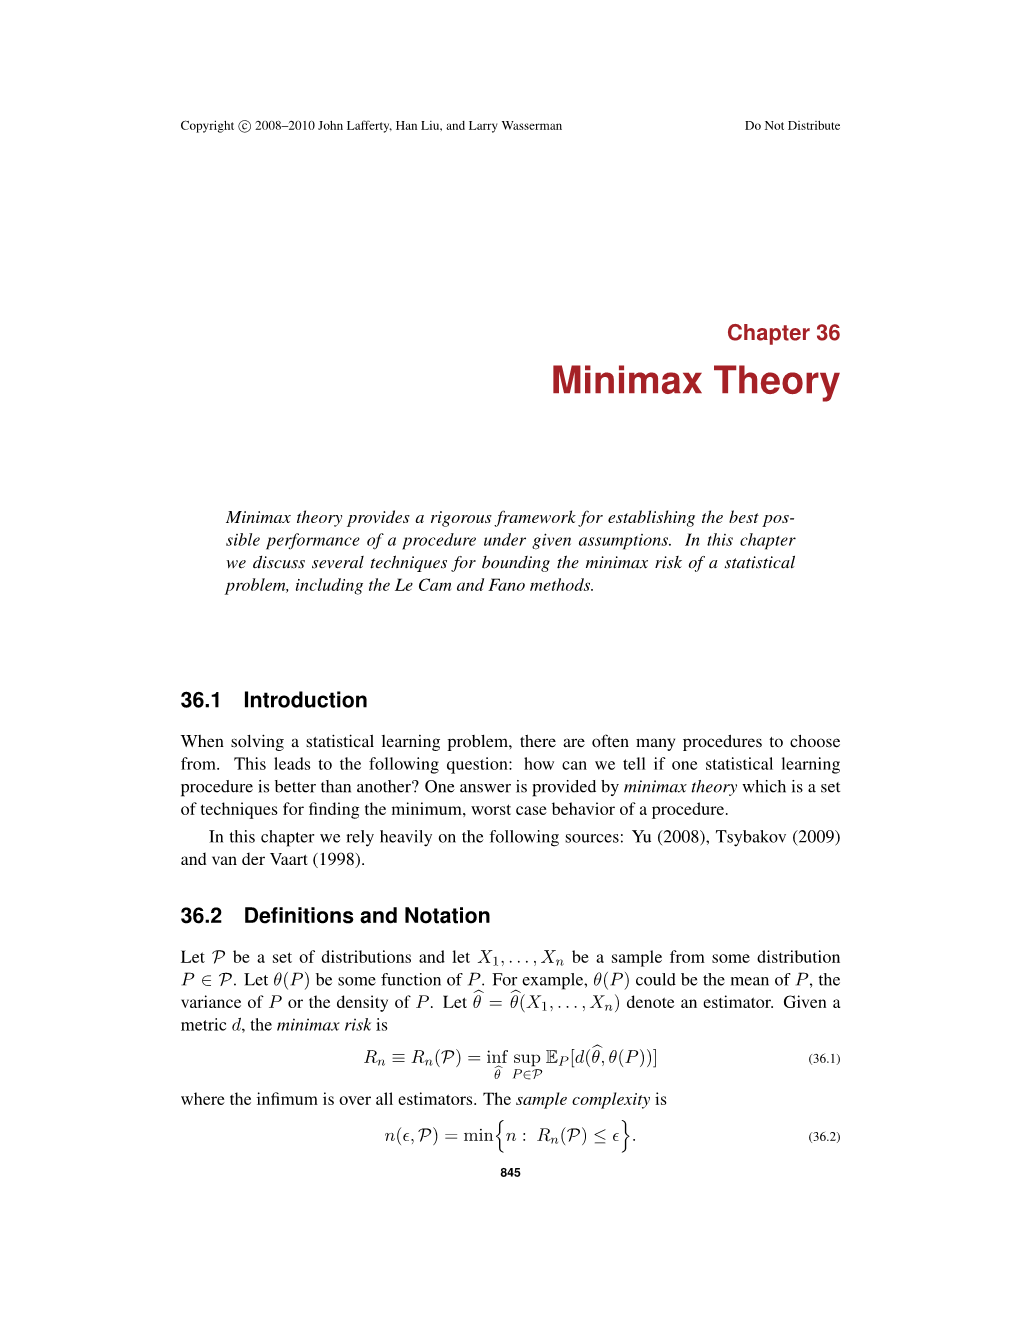 Minimax Theory